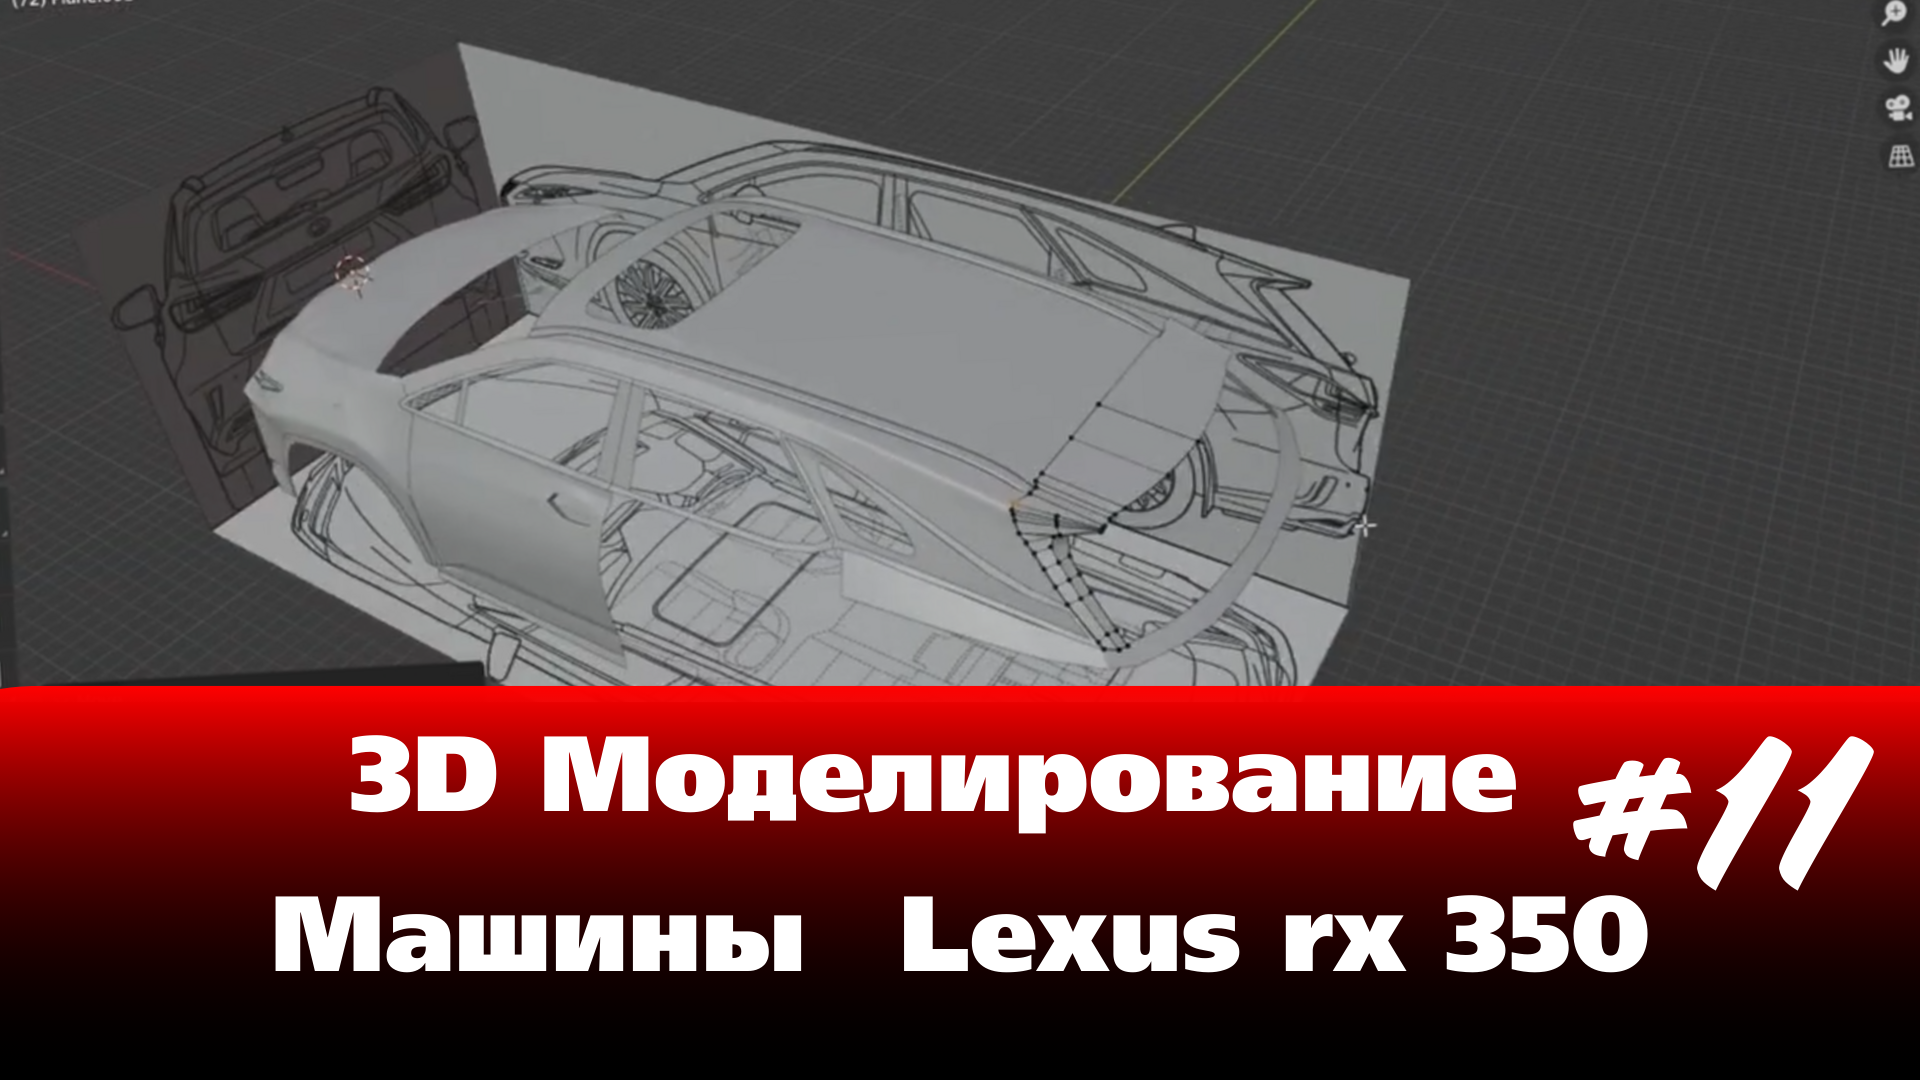 3D Моделирование Машины в Blender - Lexus rx 350 часть 11 #Blender